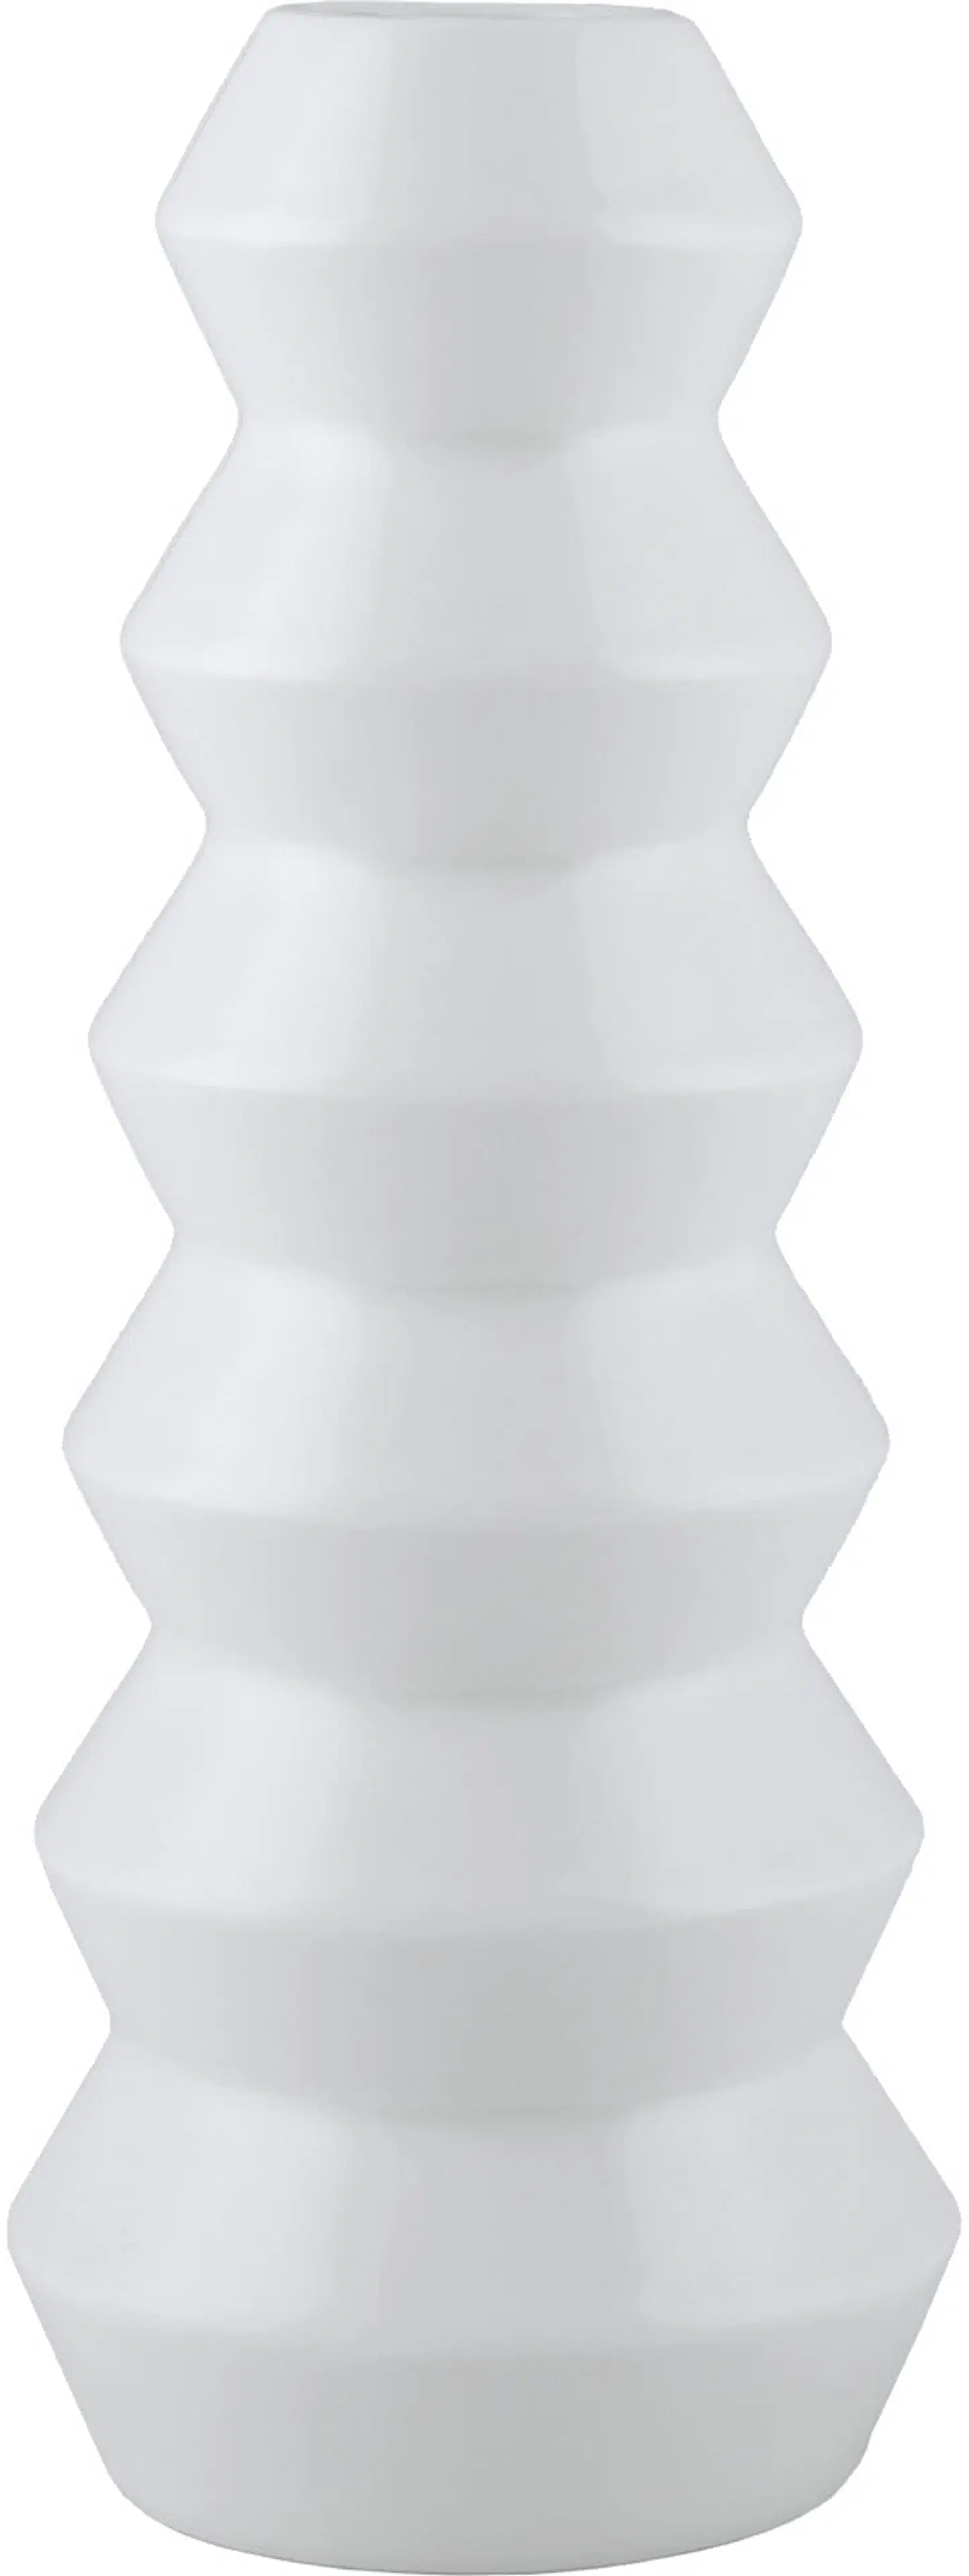 Pentik Arkki maljakko 12x29 cm, valkoinen